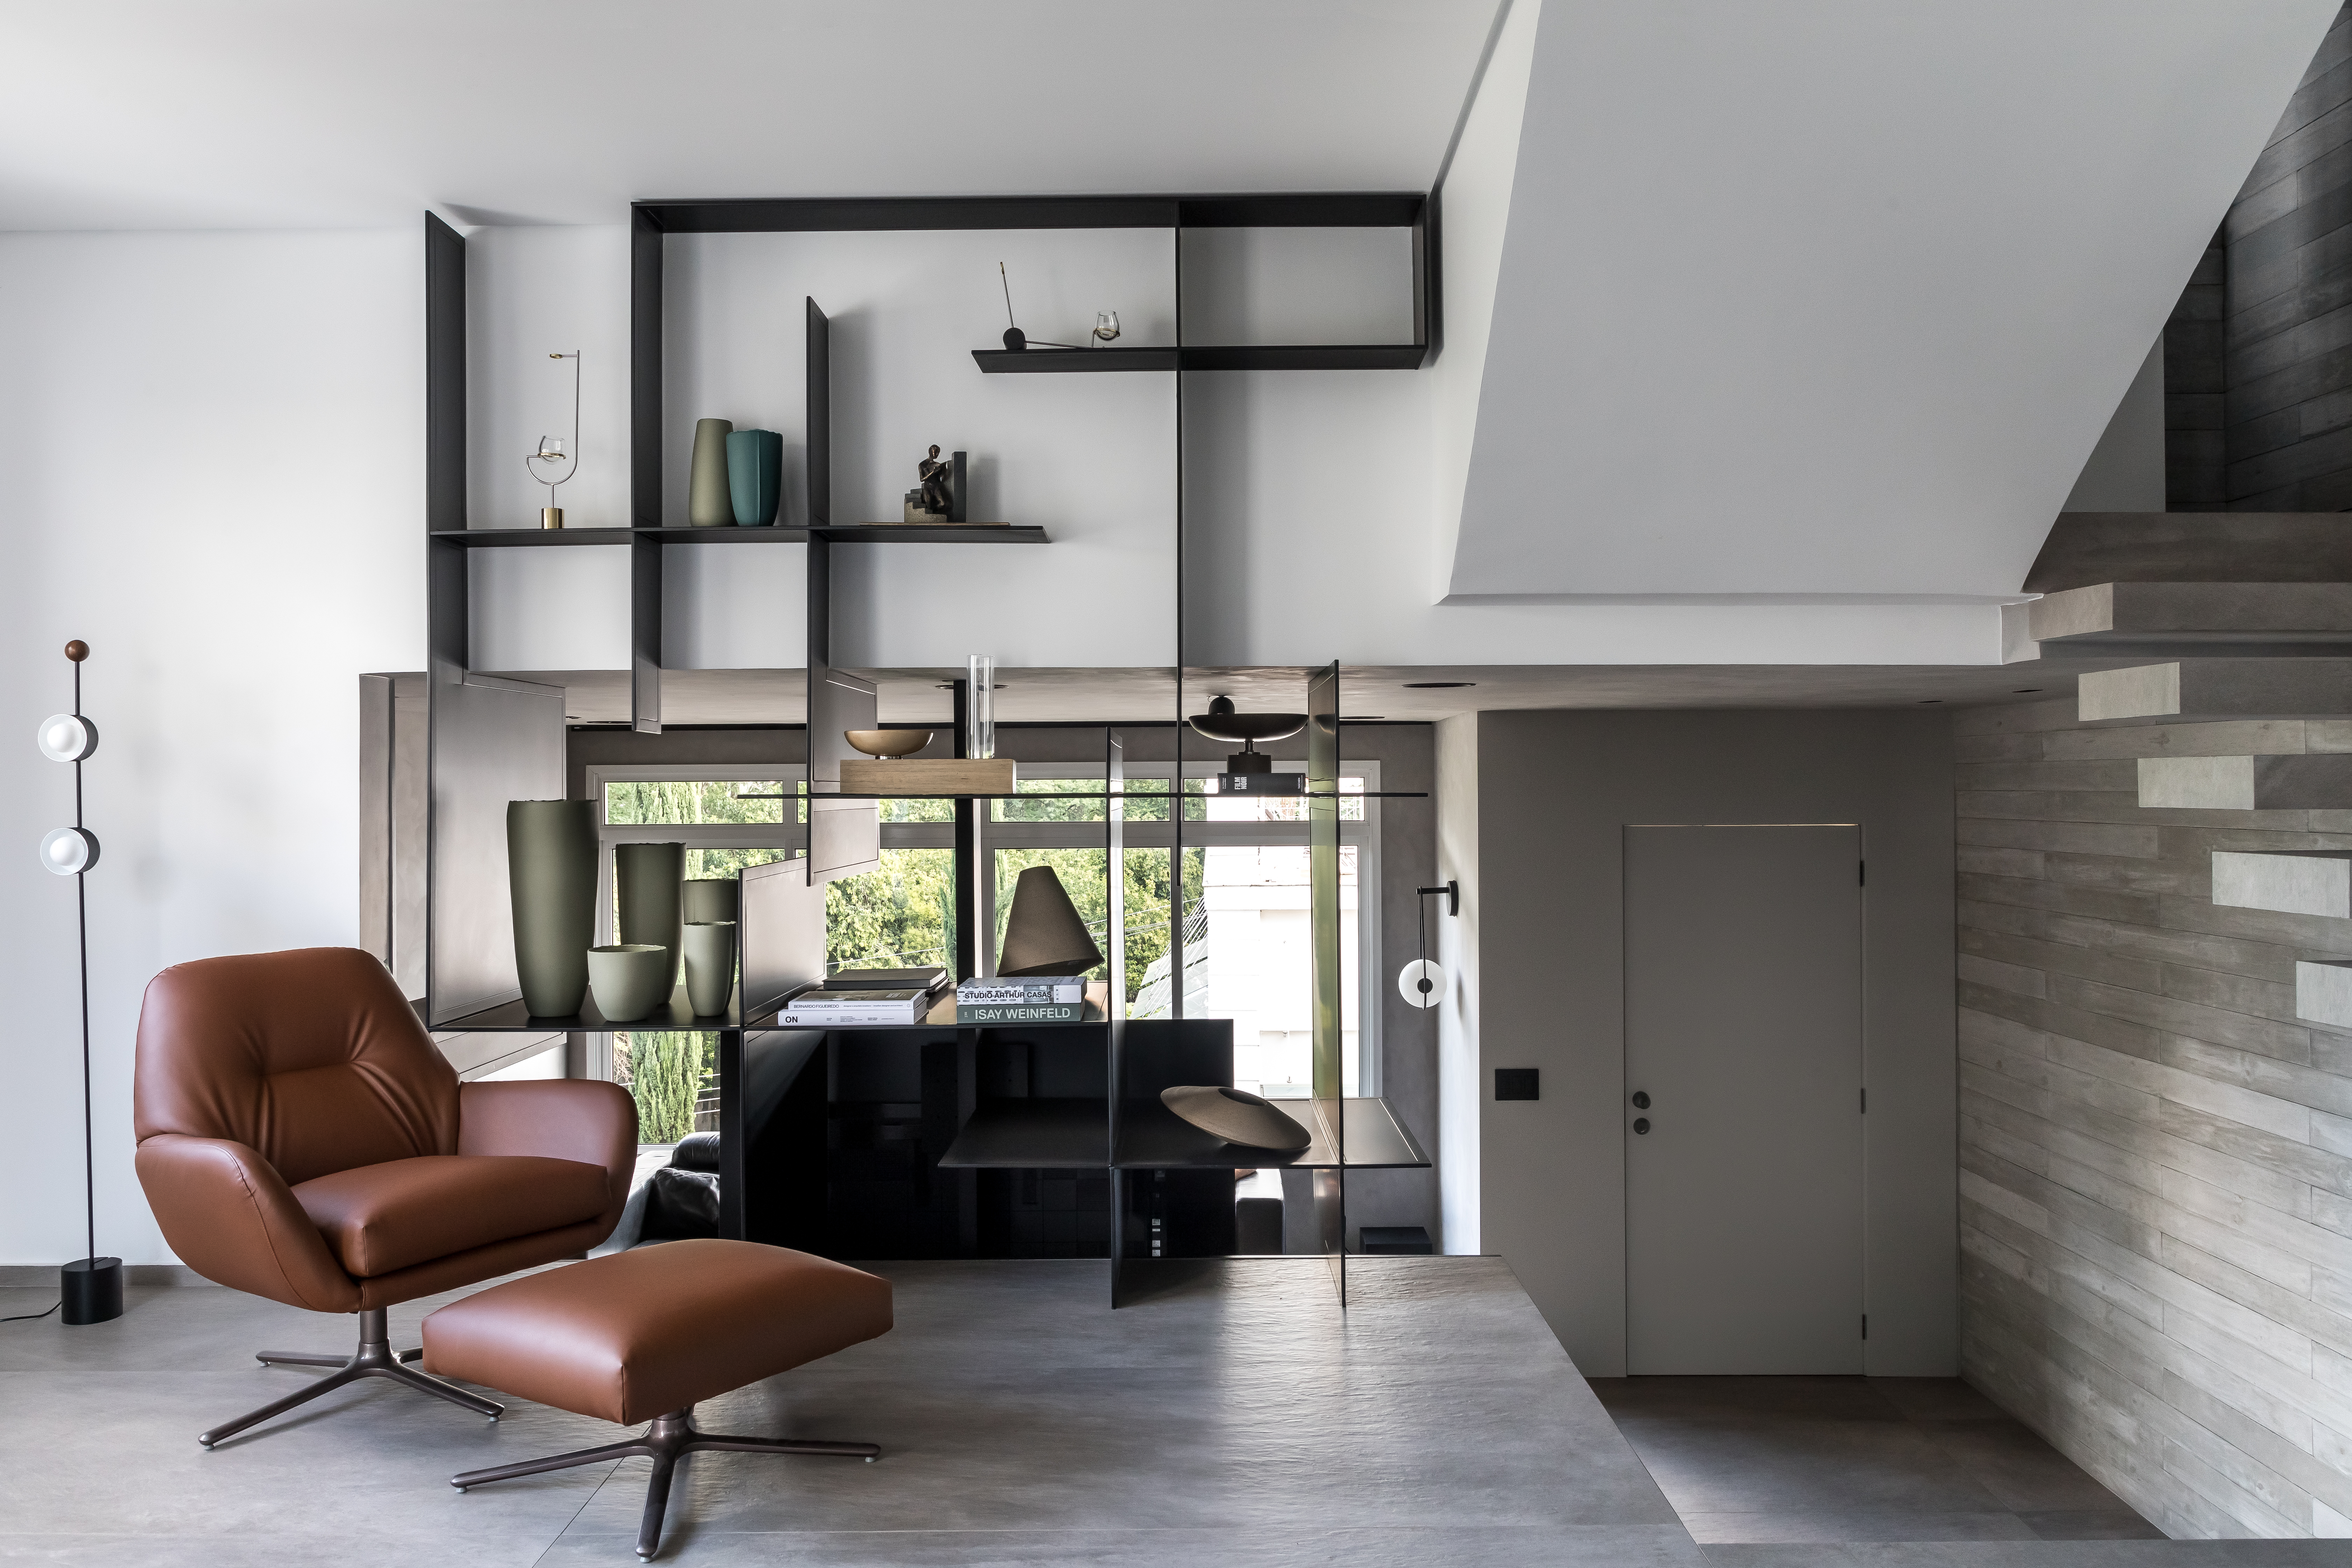 Contemporâneo e industrial formam esta casa de 220 m² em Curitiba